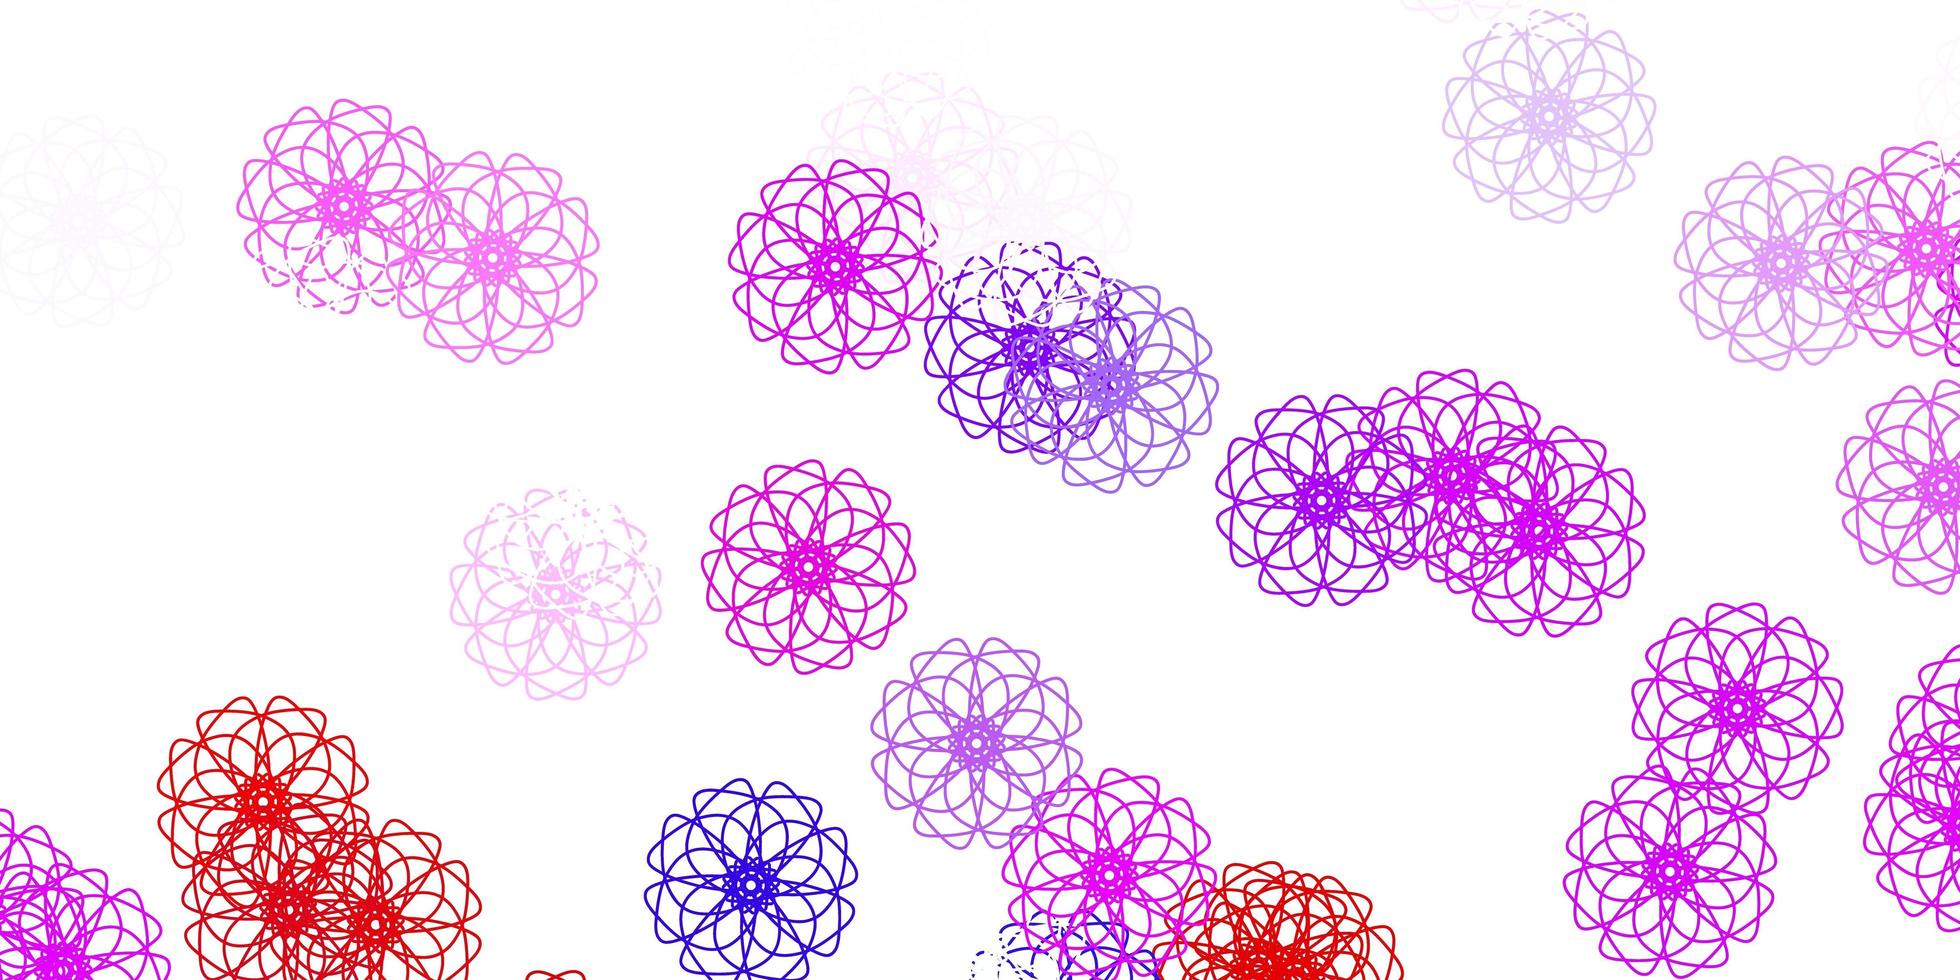 textura de doodle azul e vermelho claro com flores. vetor